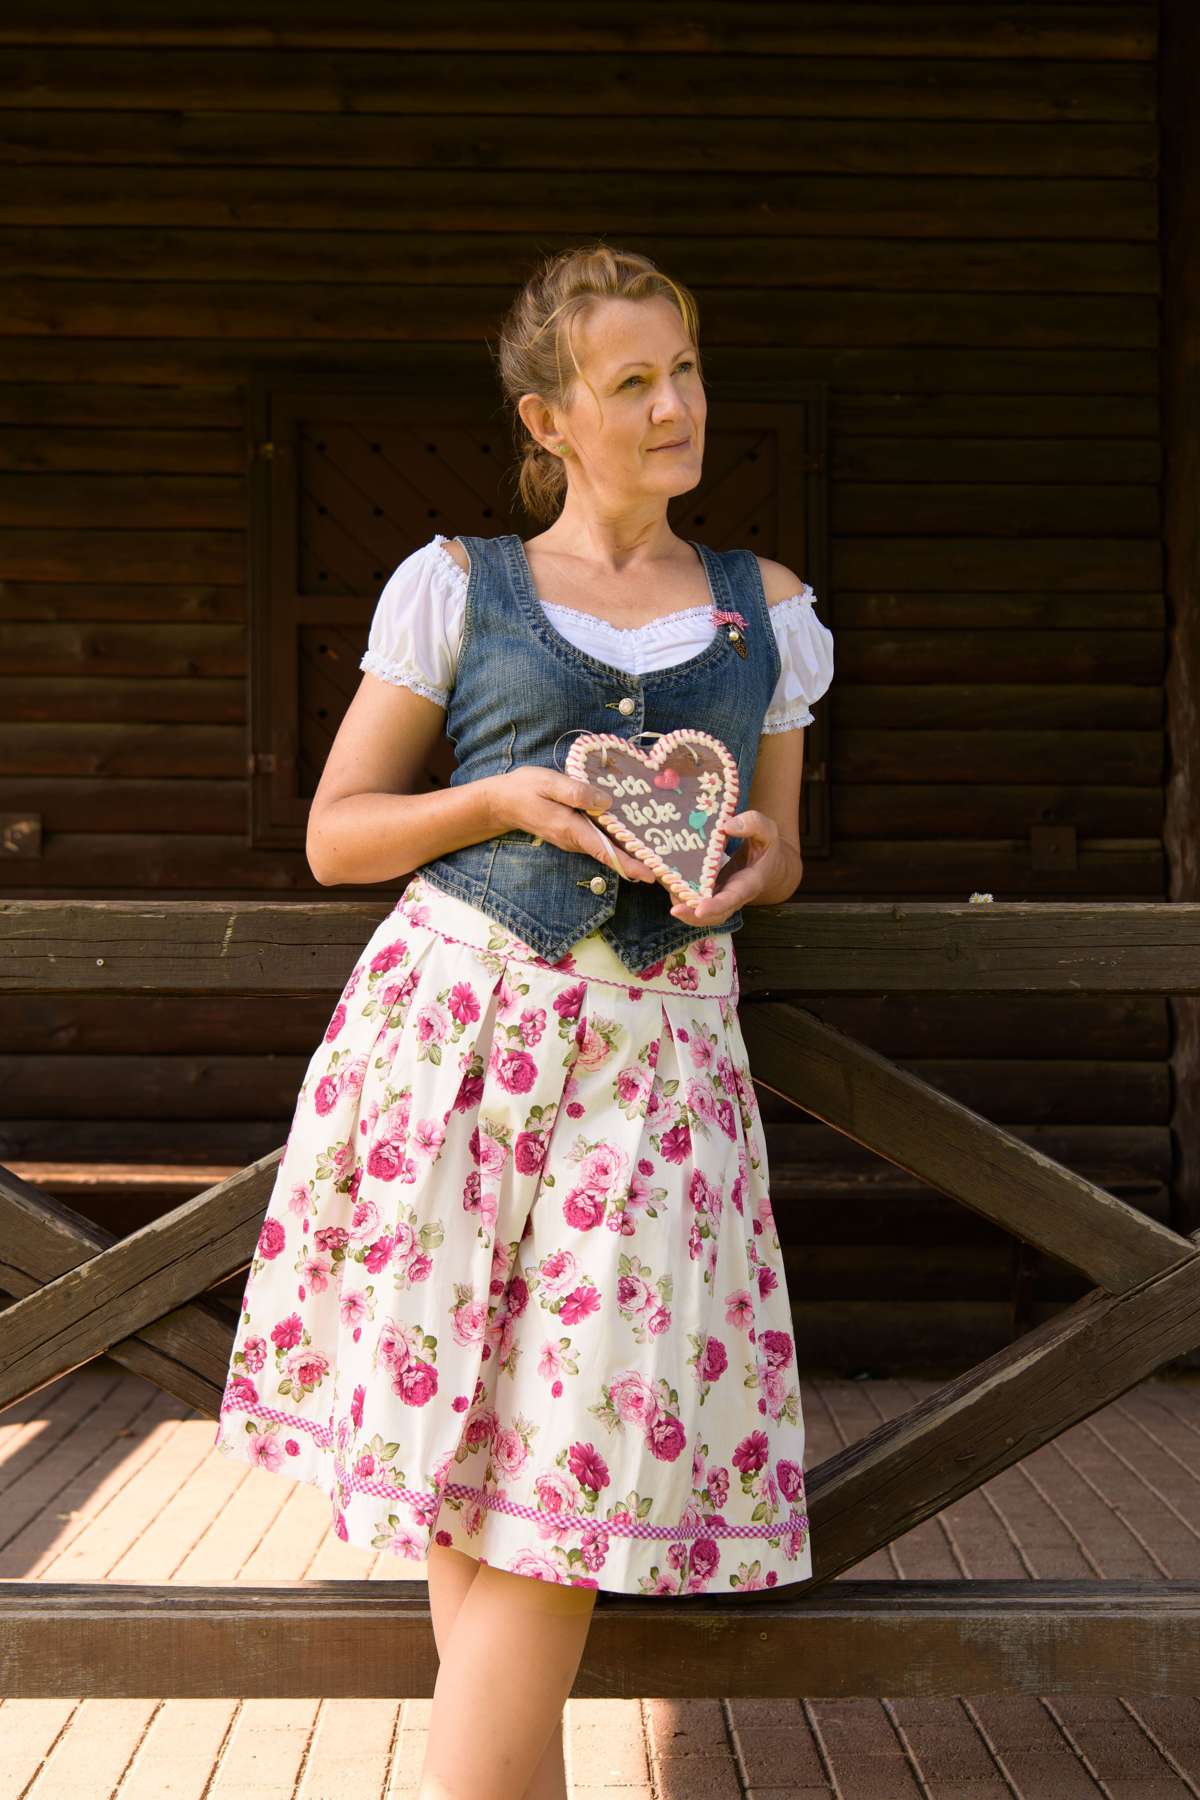 Традиционная юбка Selina плиссированная юбка с принтом розы, юбка цвета экрю, длина 65 см, хлопок